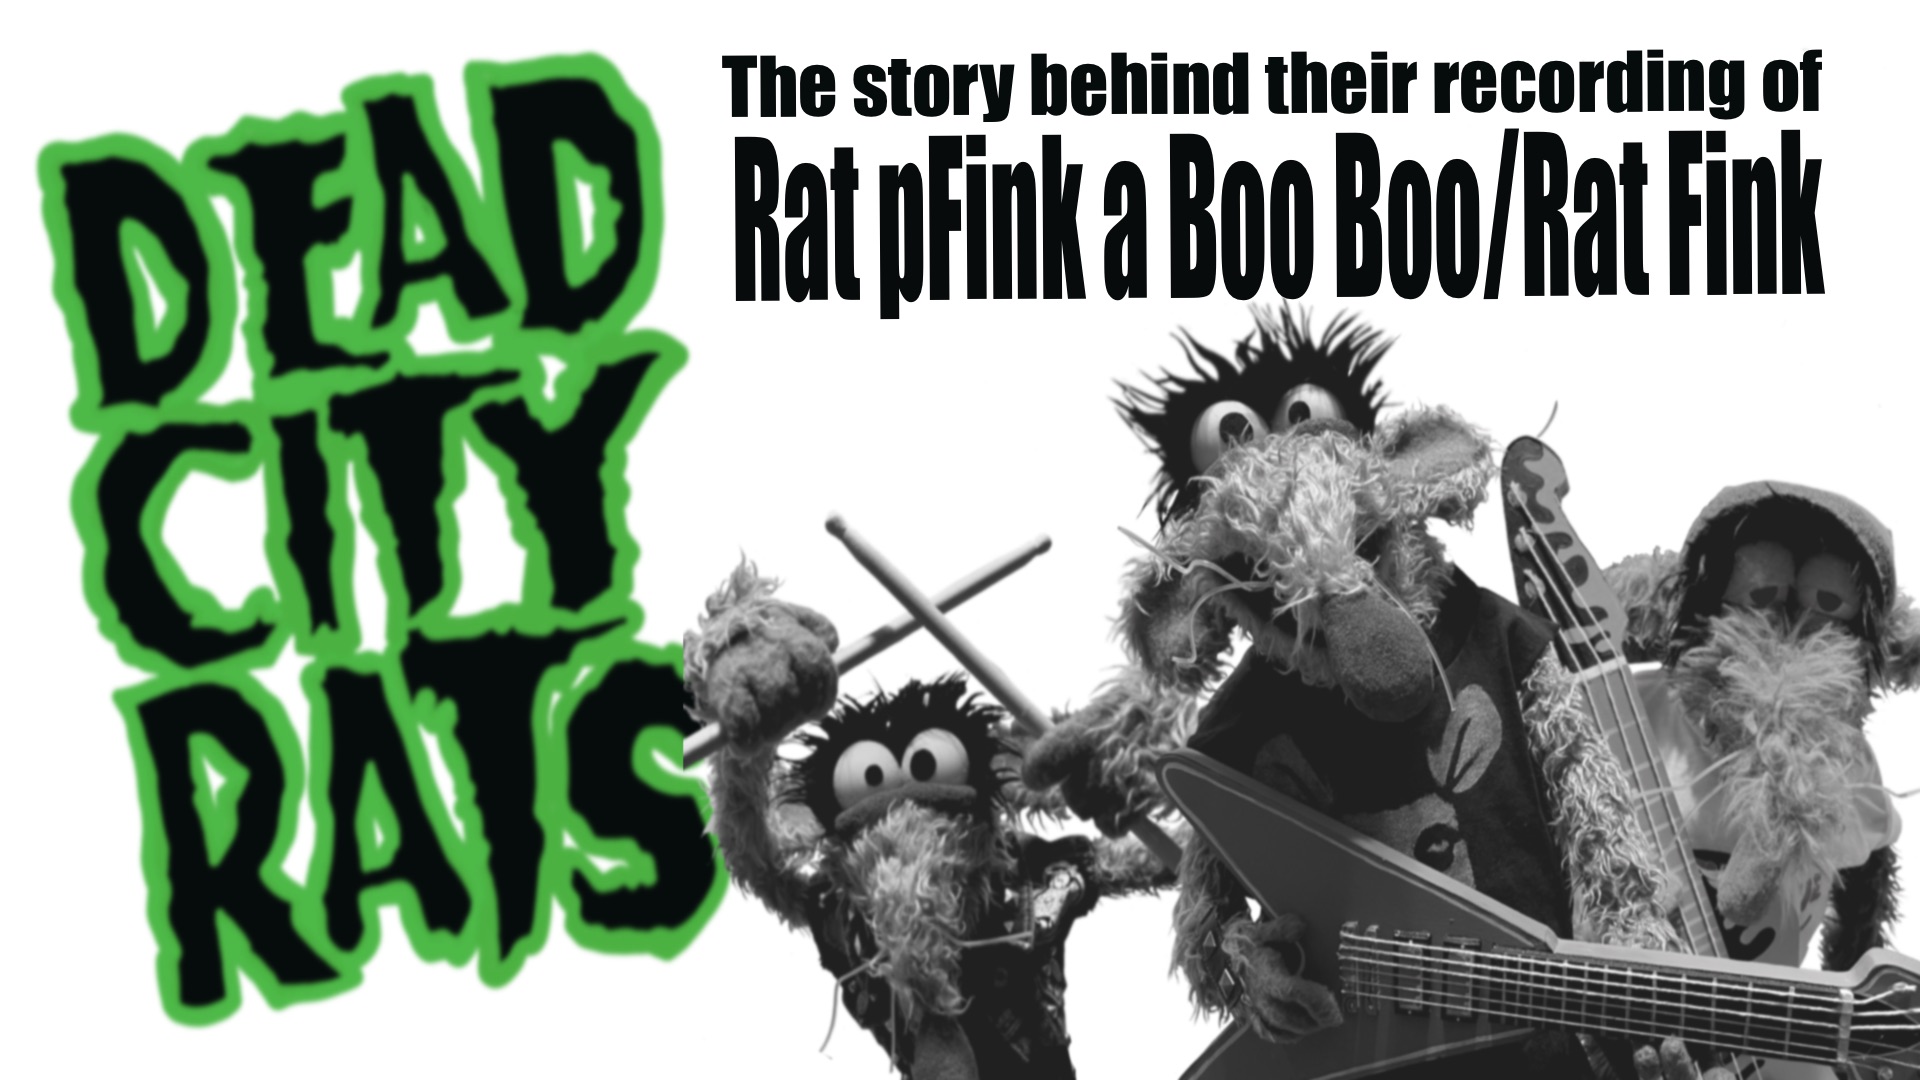 Rat pFink a Boo Boo/ Rat Fink